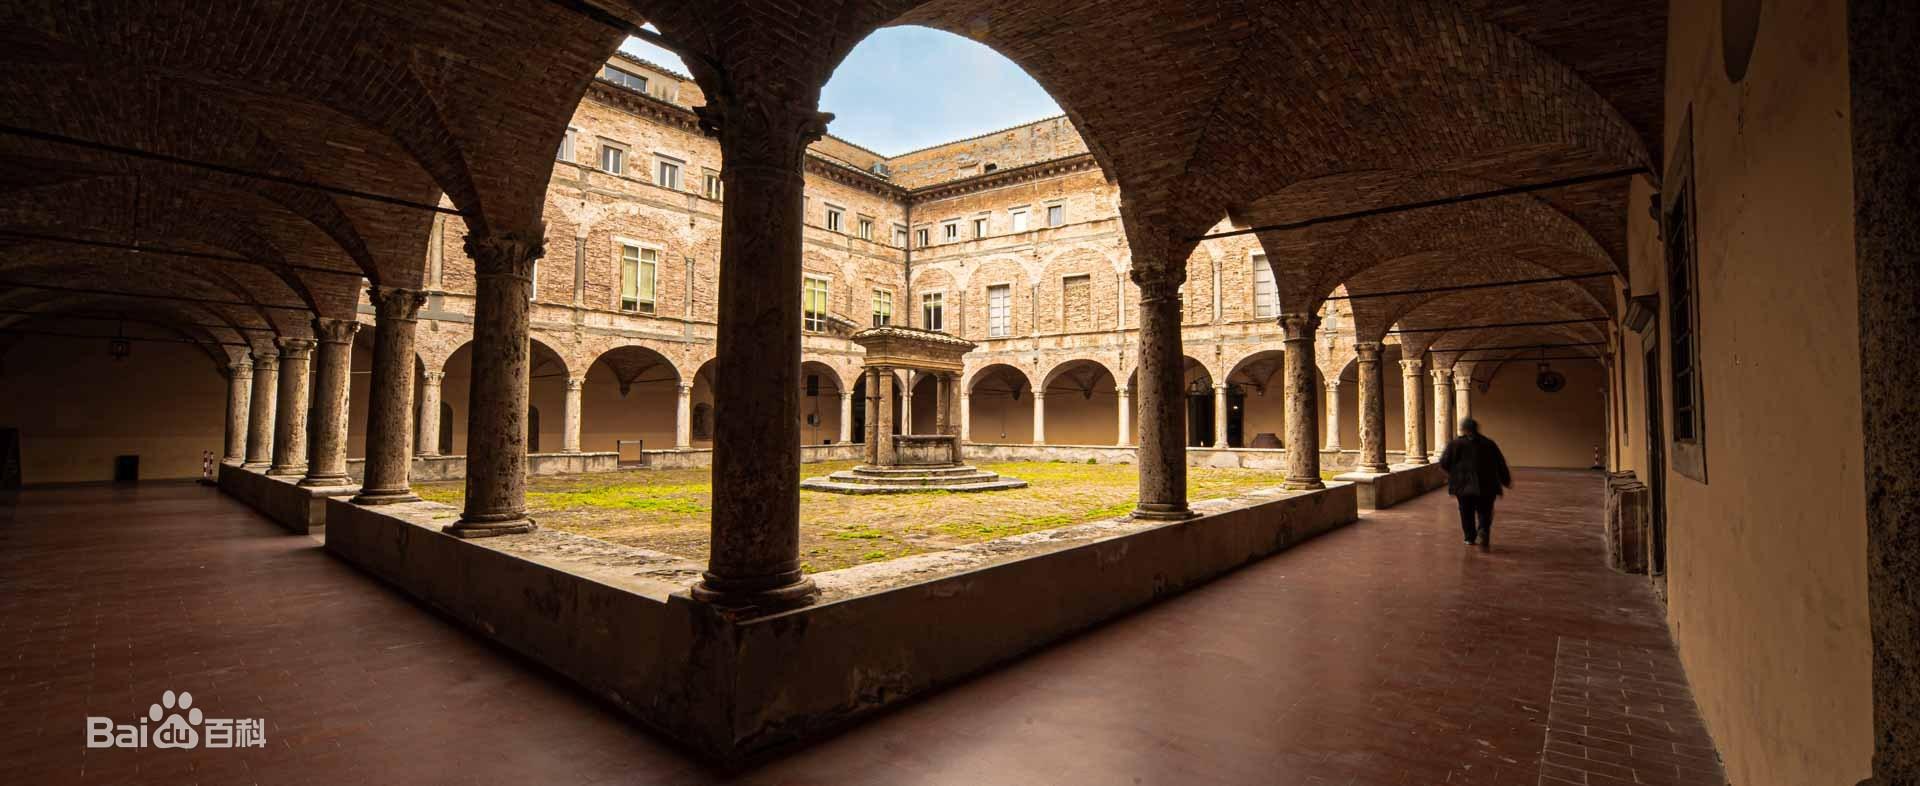 佩鲁贾大学——成立于1308年，意大利最古老的大学之一